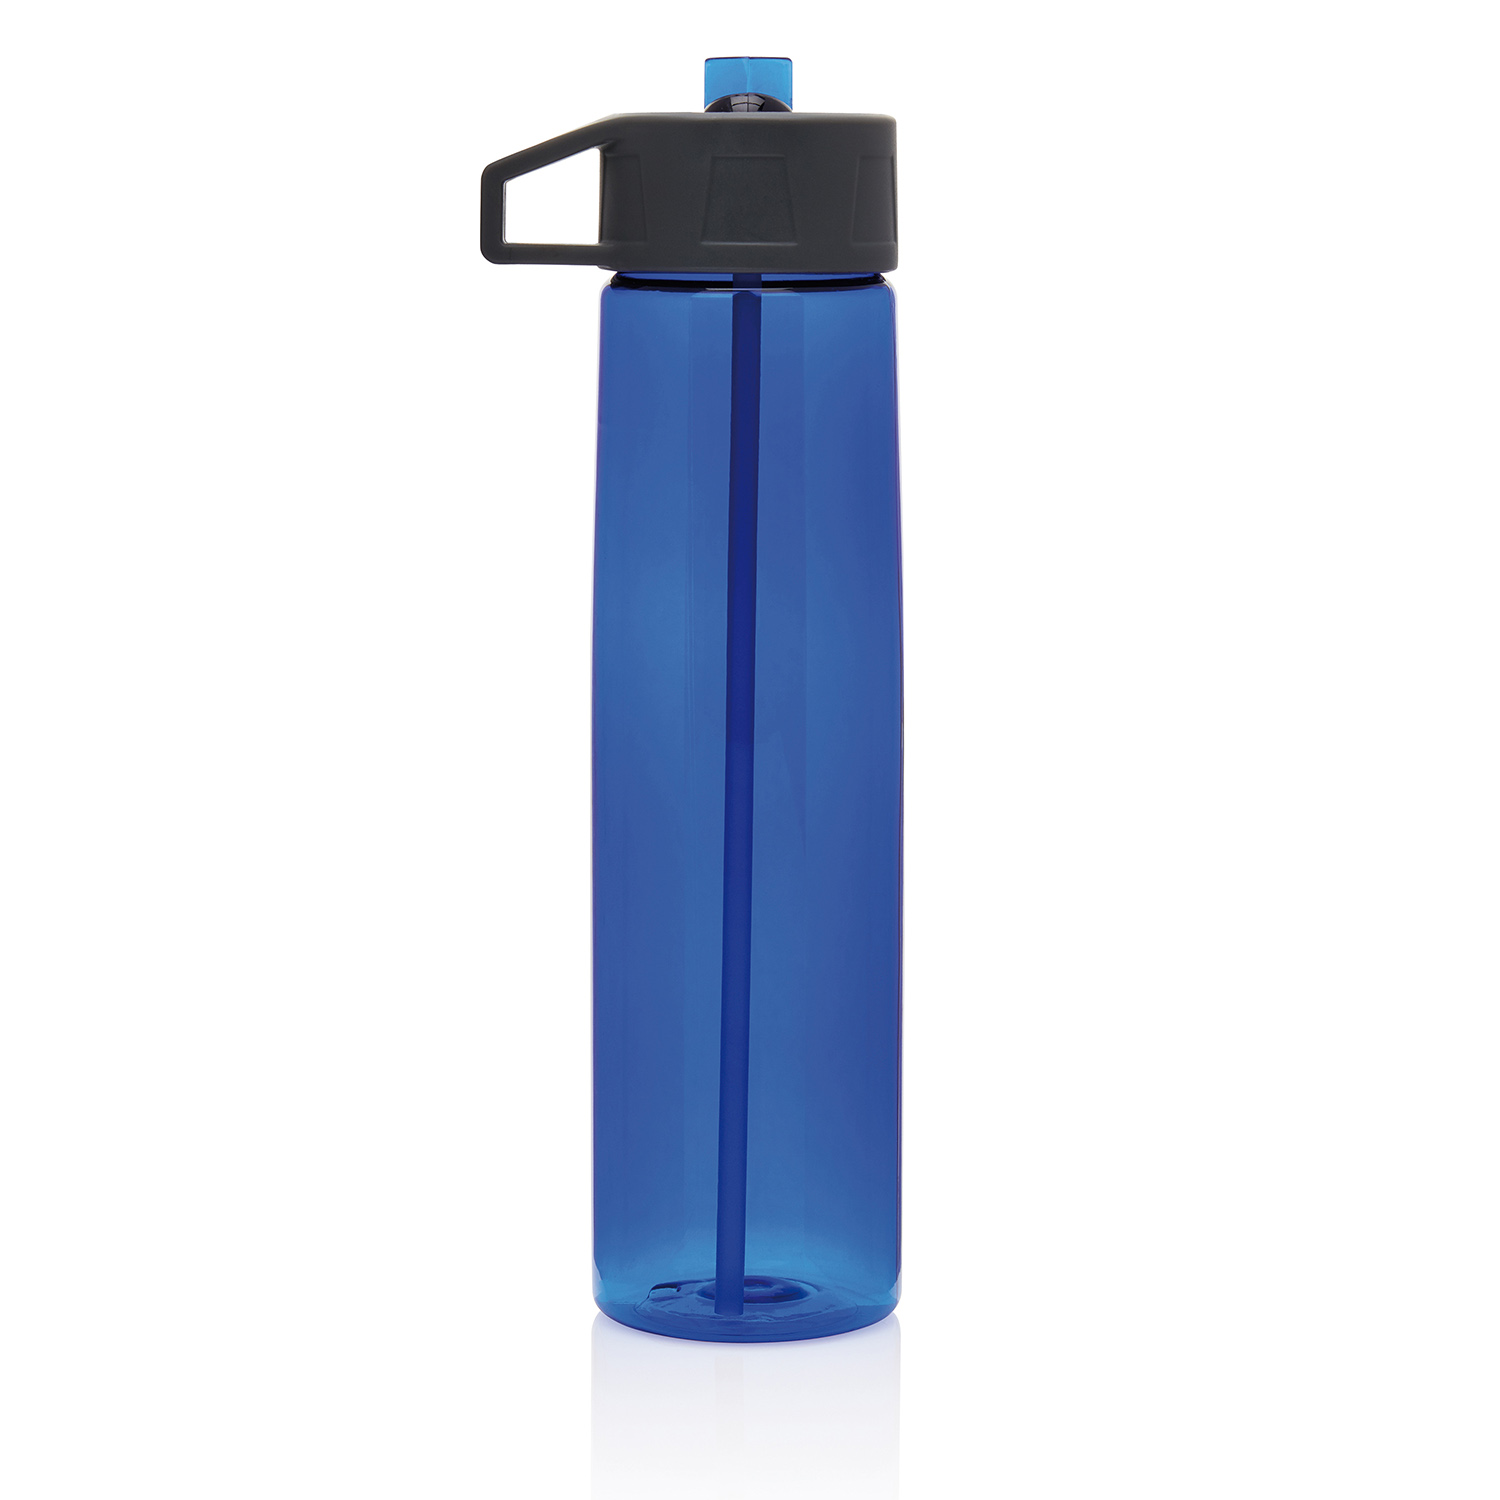 Бутылки для воды оптом. Tritan бутылка для воды. Бутылка спортивная для воды Tritan. Материал Тритан для бутылки. Бутылка для воды 750ml xdfls202.